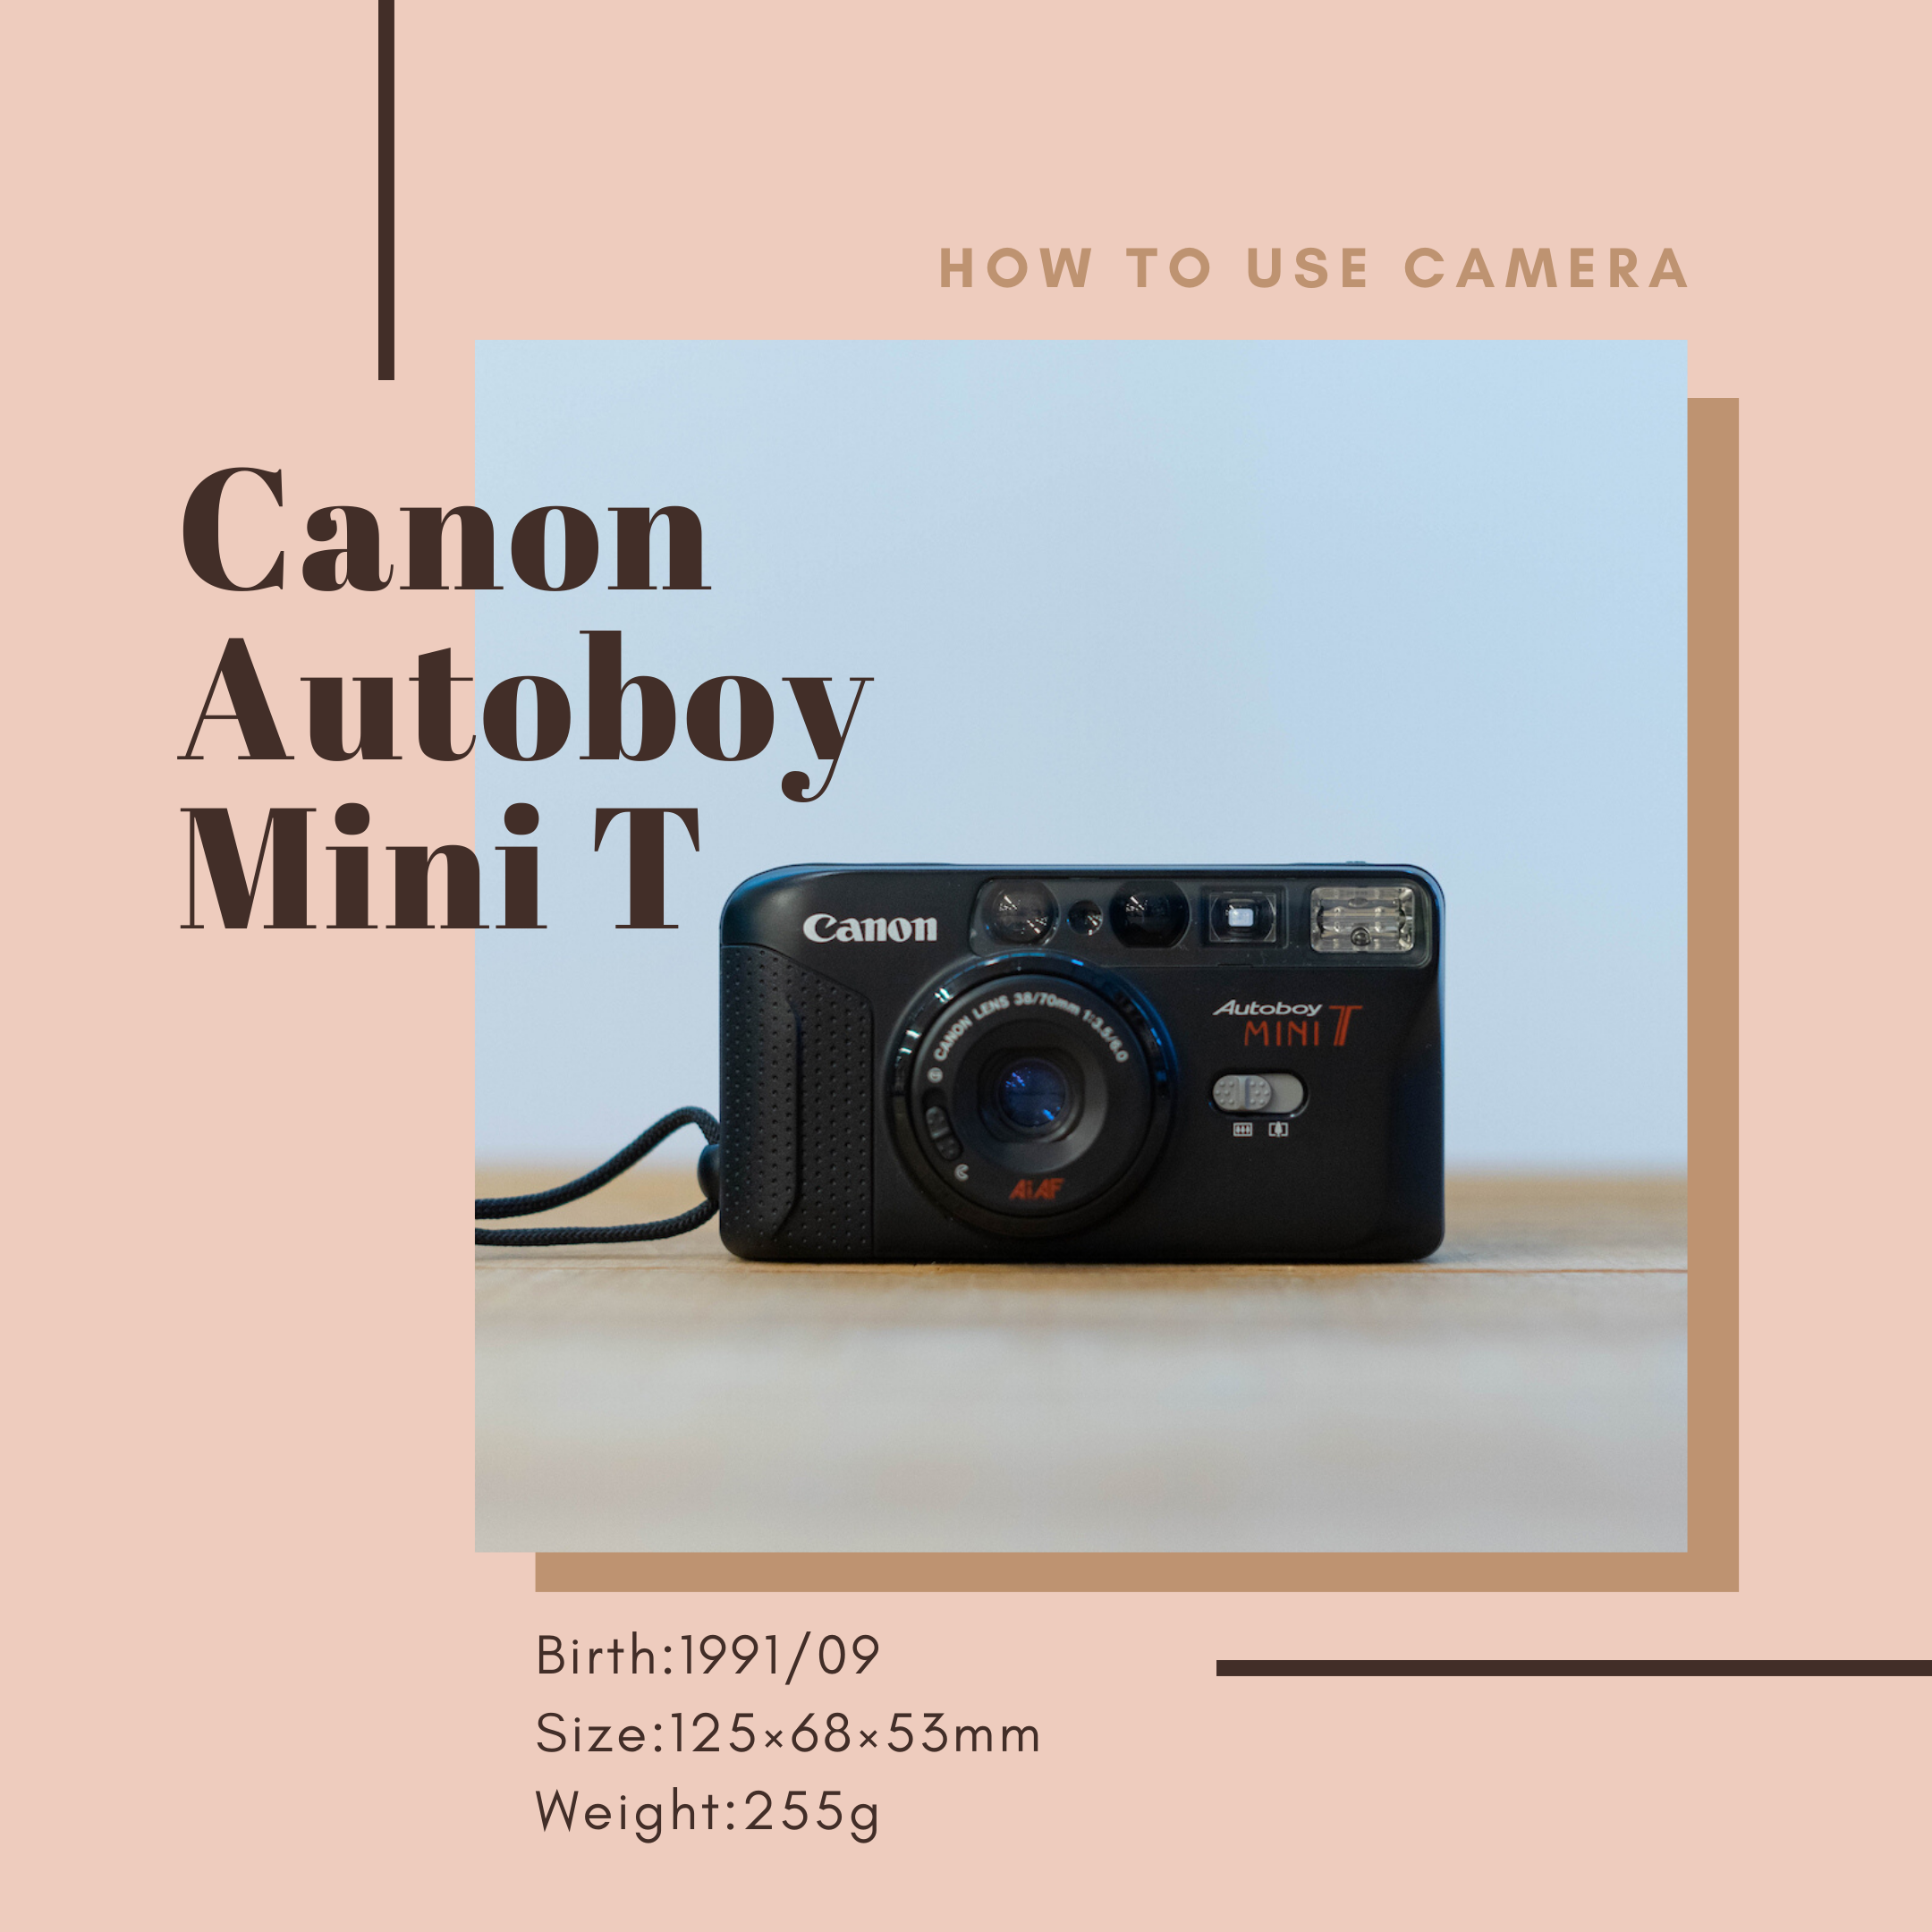 Canon Autoboy Minit Tの使い方 | Totte Me Camera